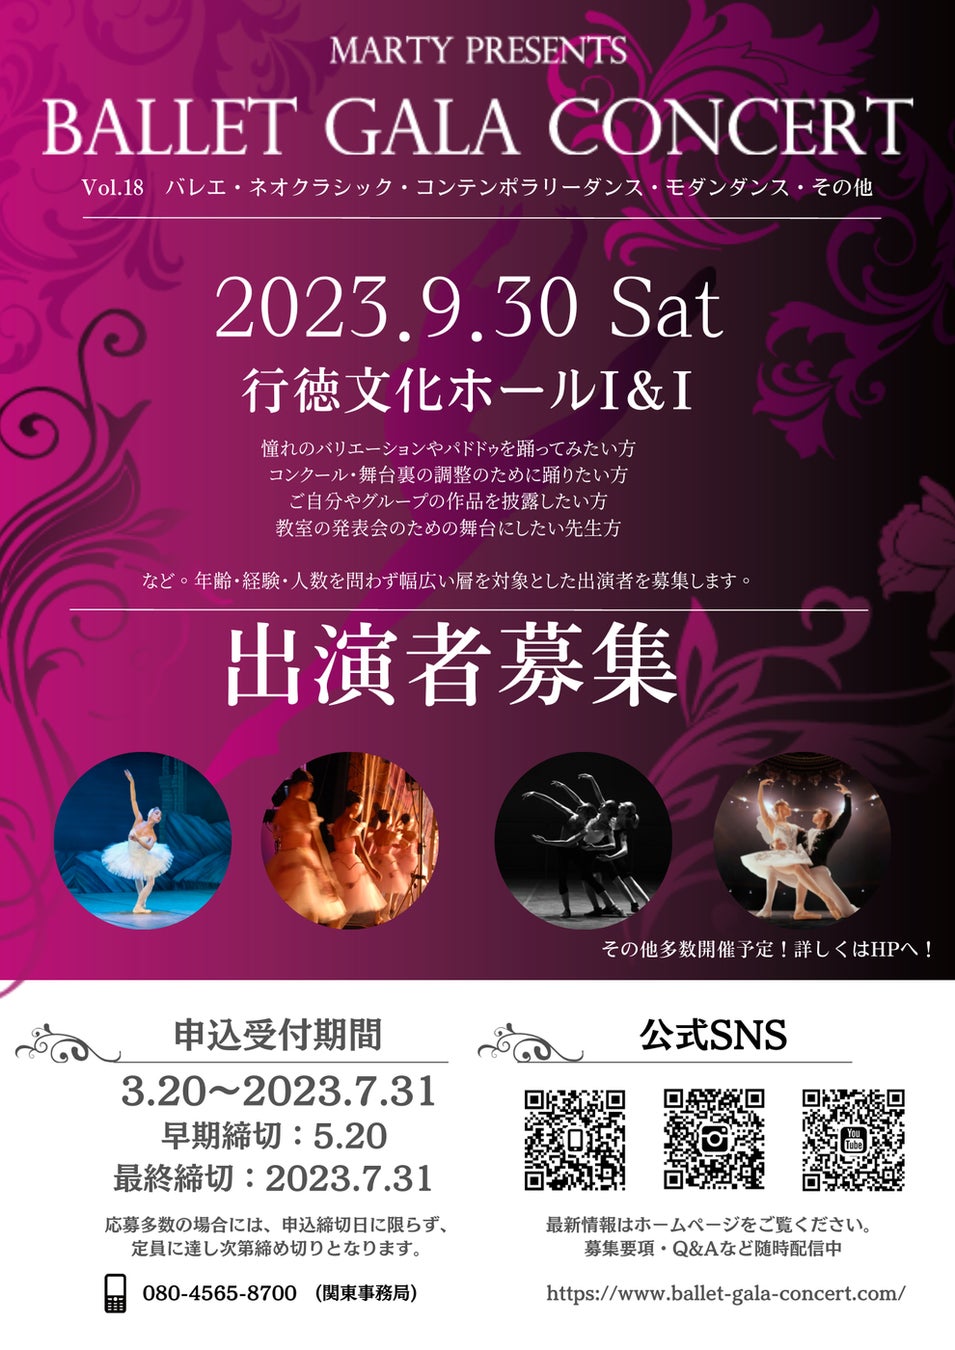 羽多野渉さん、寺島拓篤さんによる番組『2D LOVE』が2023年4月16日(日)にイベントを開催！現在チケット販売中＆メール募集中!!